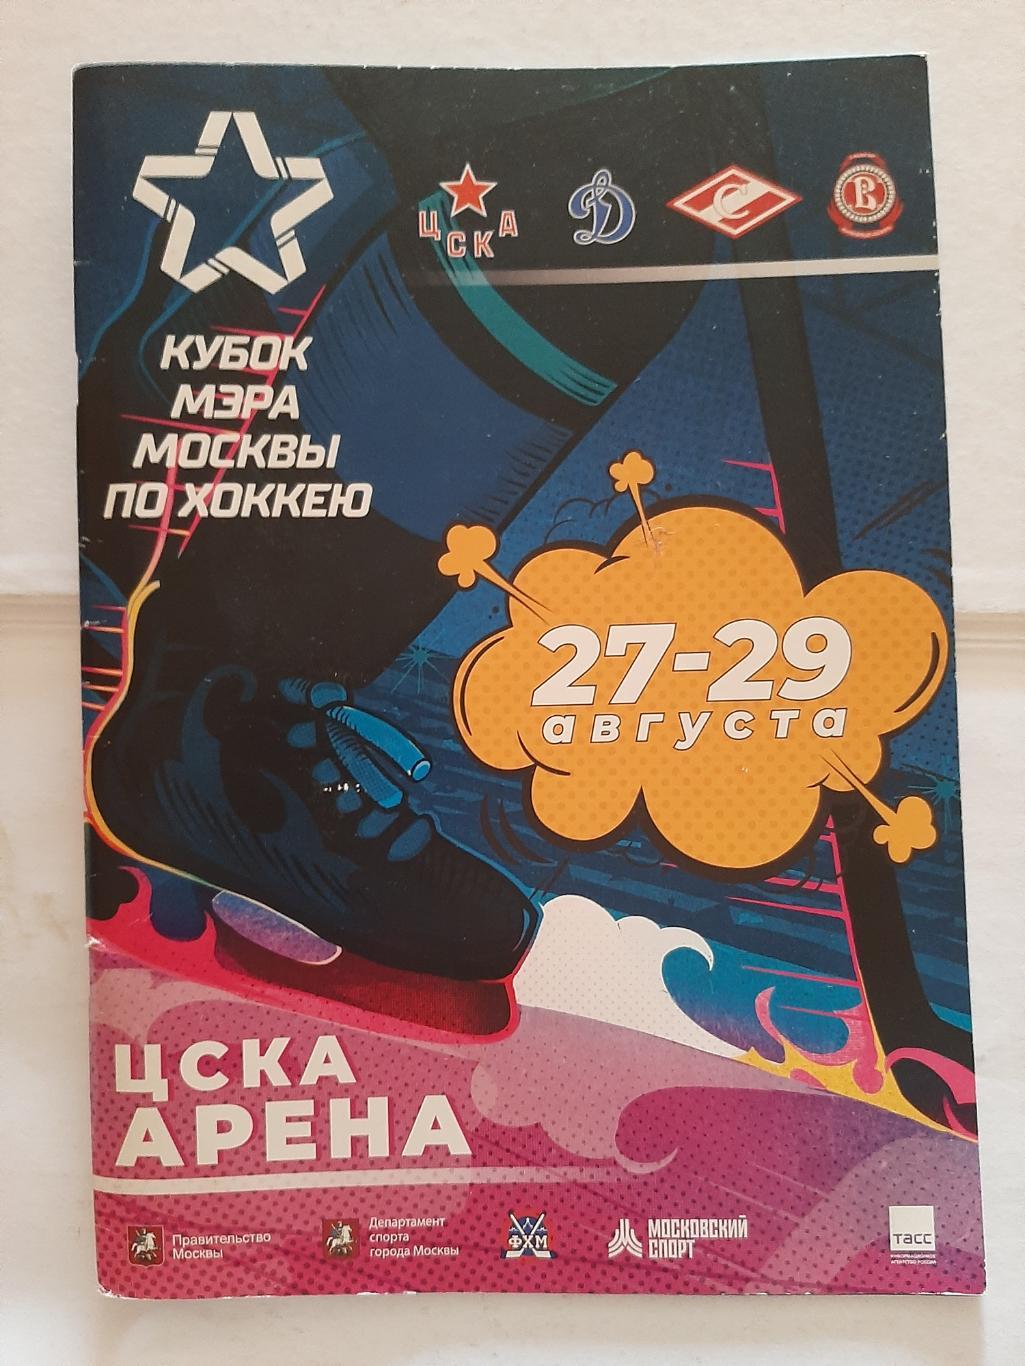 Кубок мэра Москвы по хоккею 27-29.08.2020